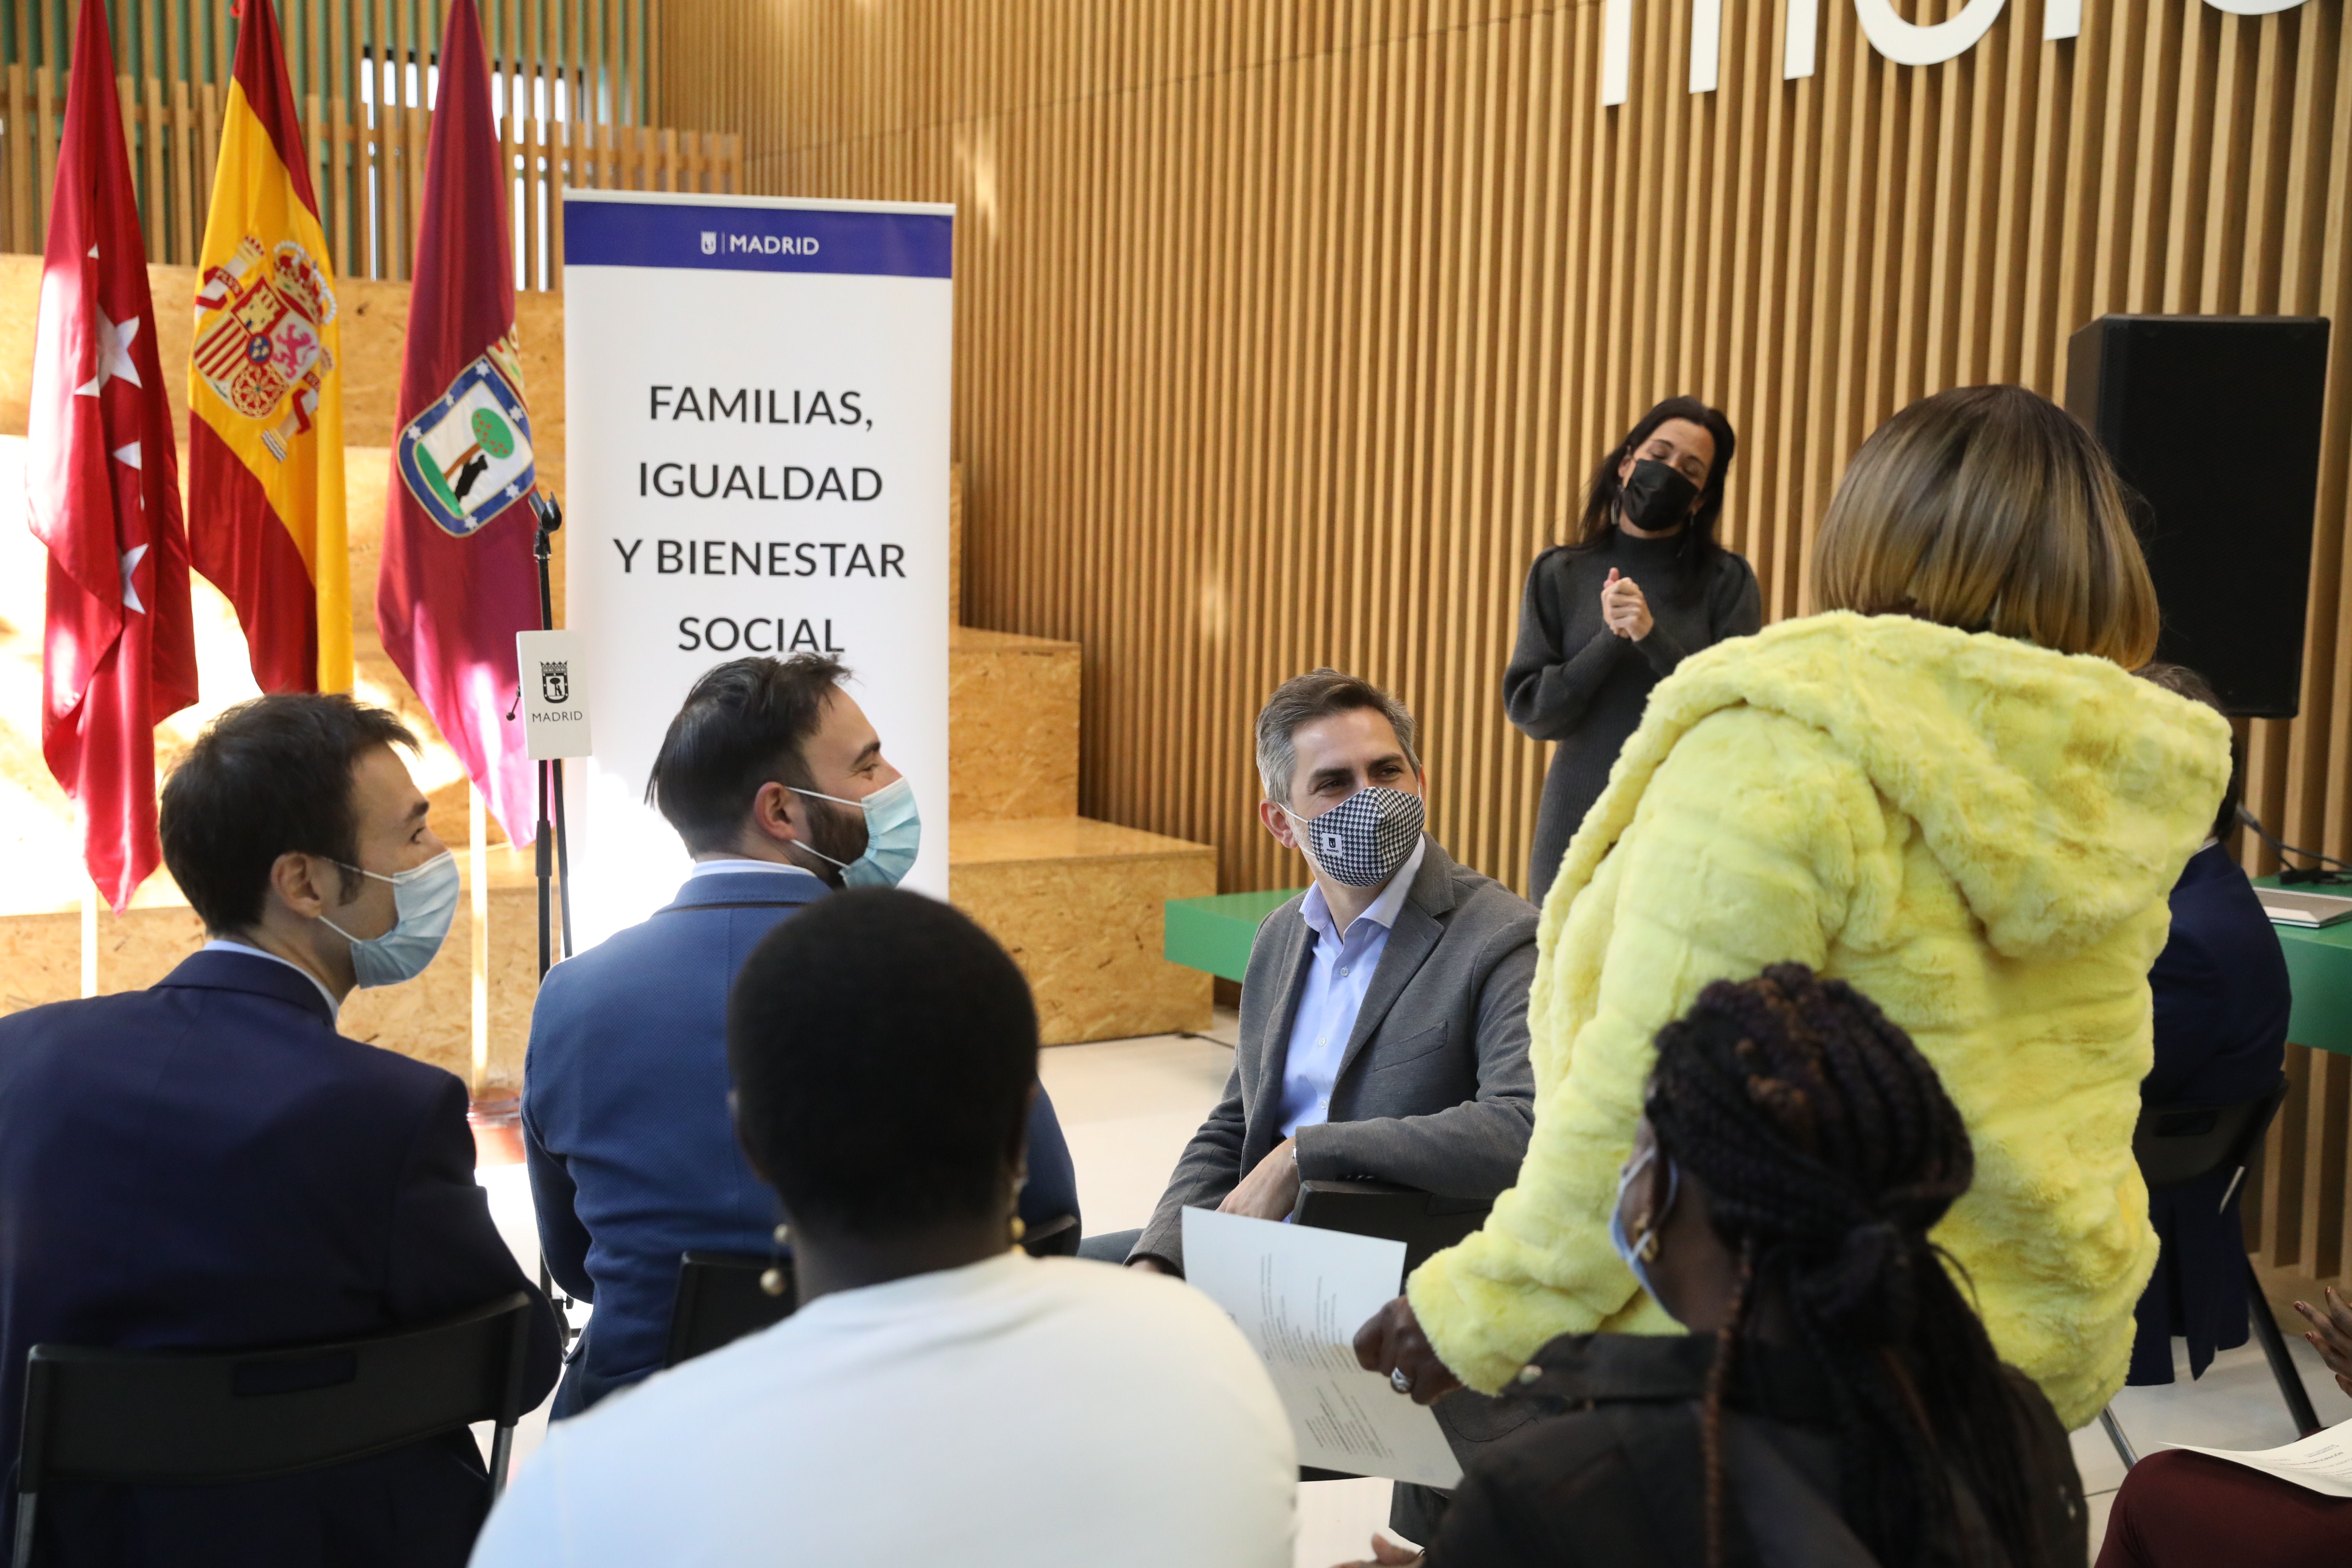 El delegado de Familias, Igualdad y Bienestar Social, Pepe Aniorte, y el concejal delegado de Innovación, Ángel Niño, durante el acto de entrega de diplomas